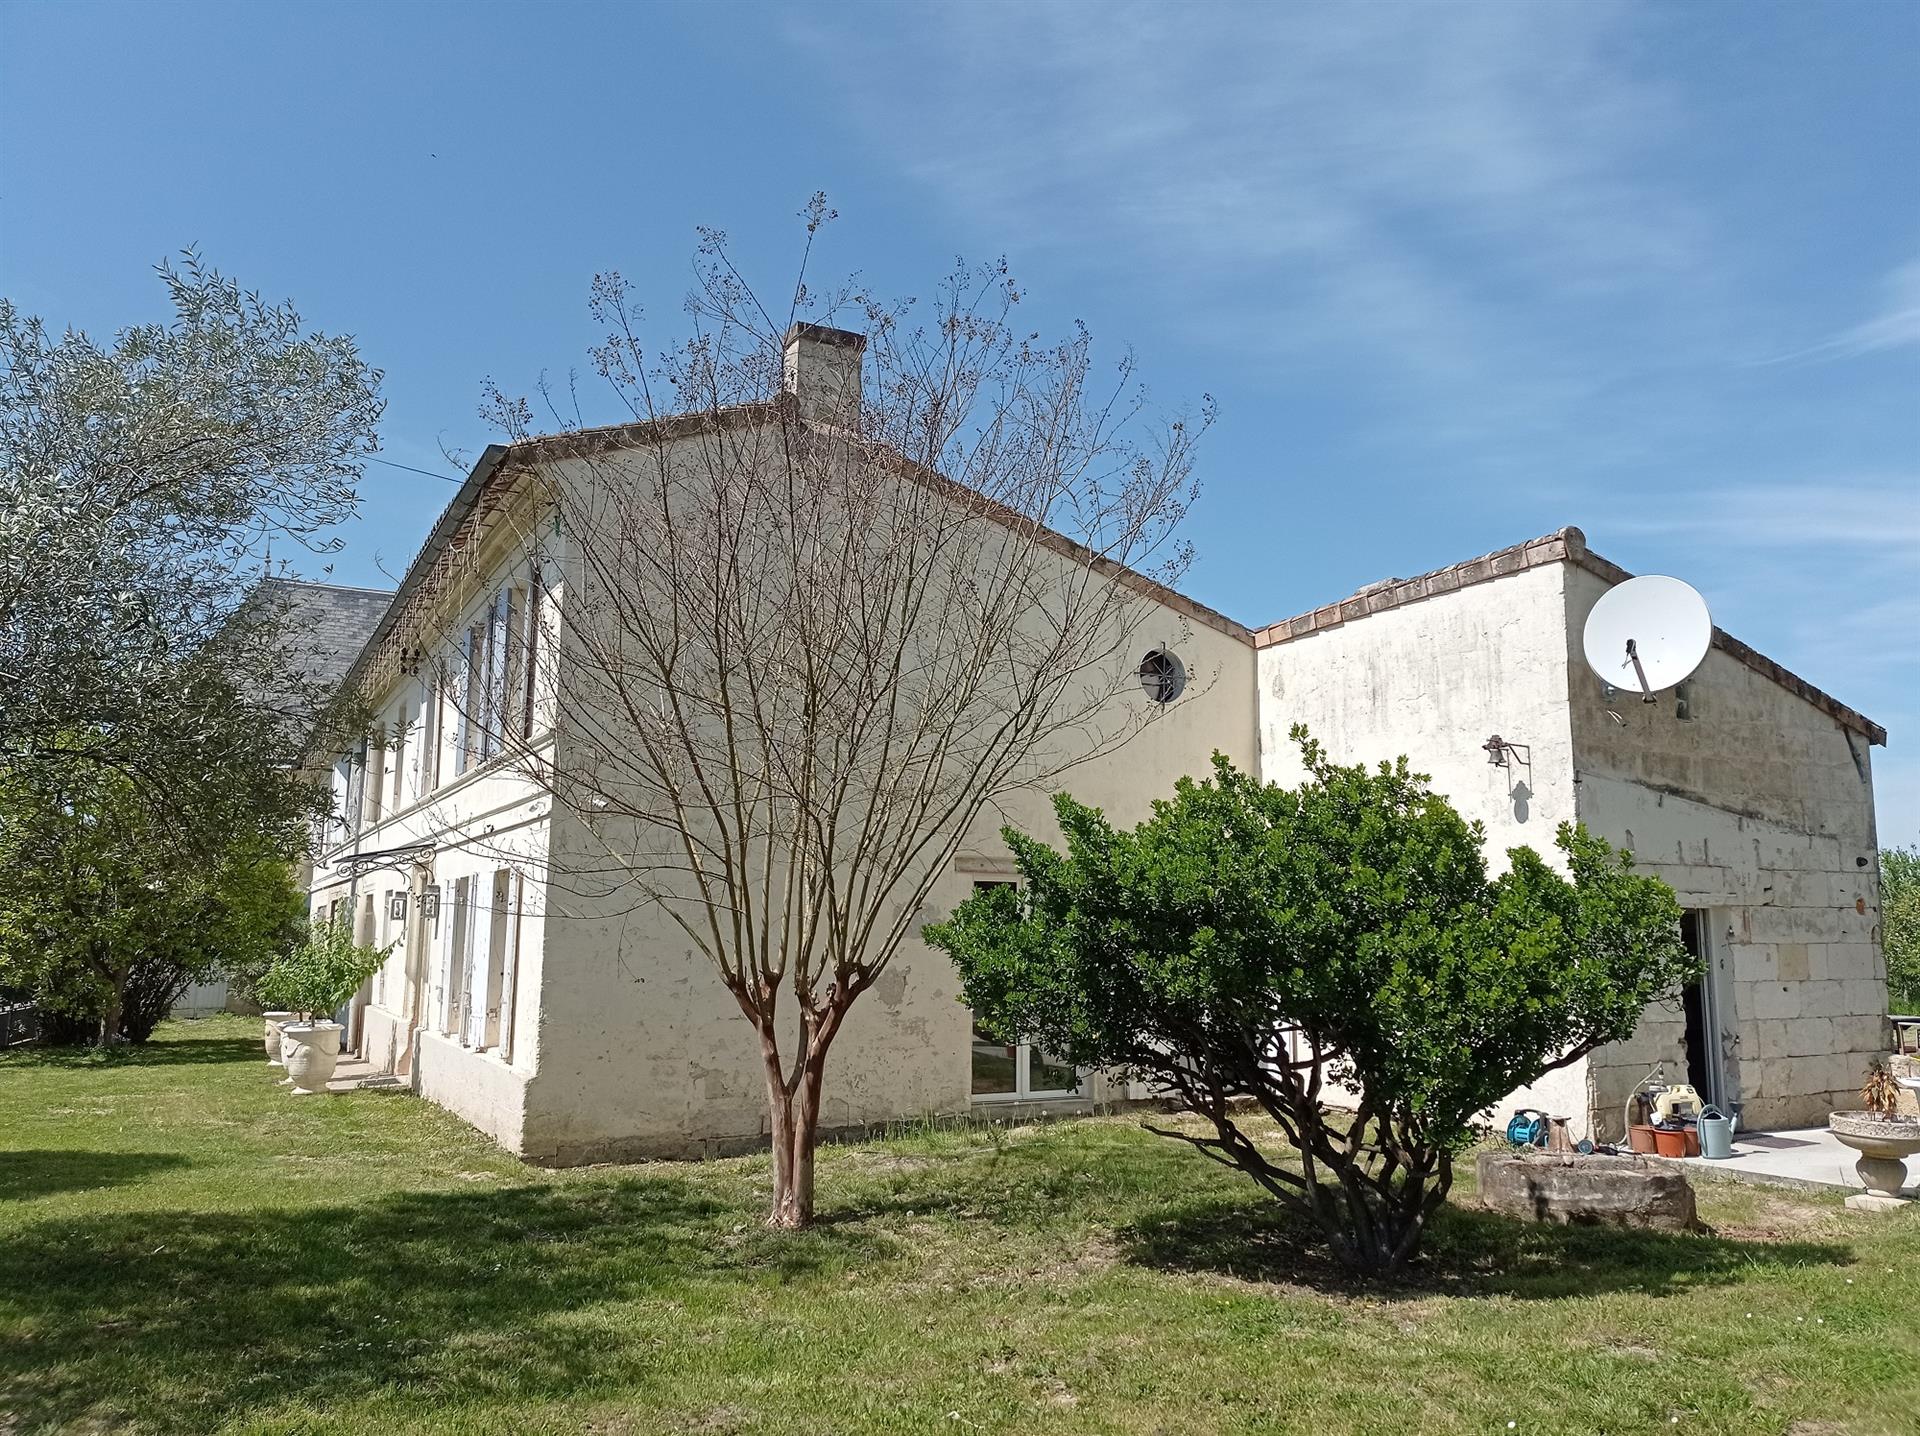 Vzácná příležitost ke koupi velkého venkovského kamenného domu v Saint-Andre-de-Cubzac, 20 km od